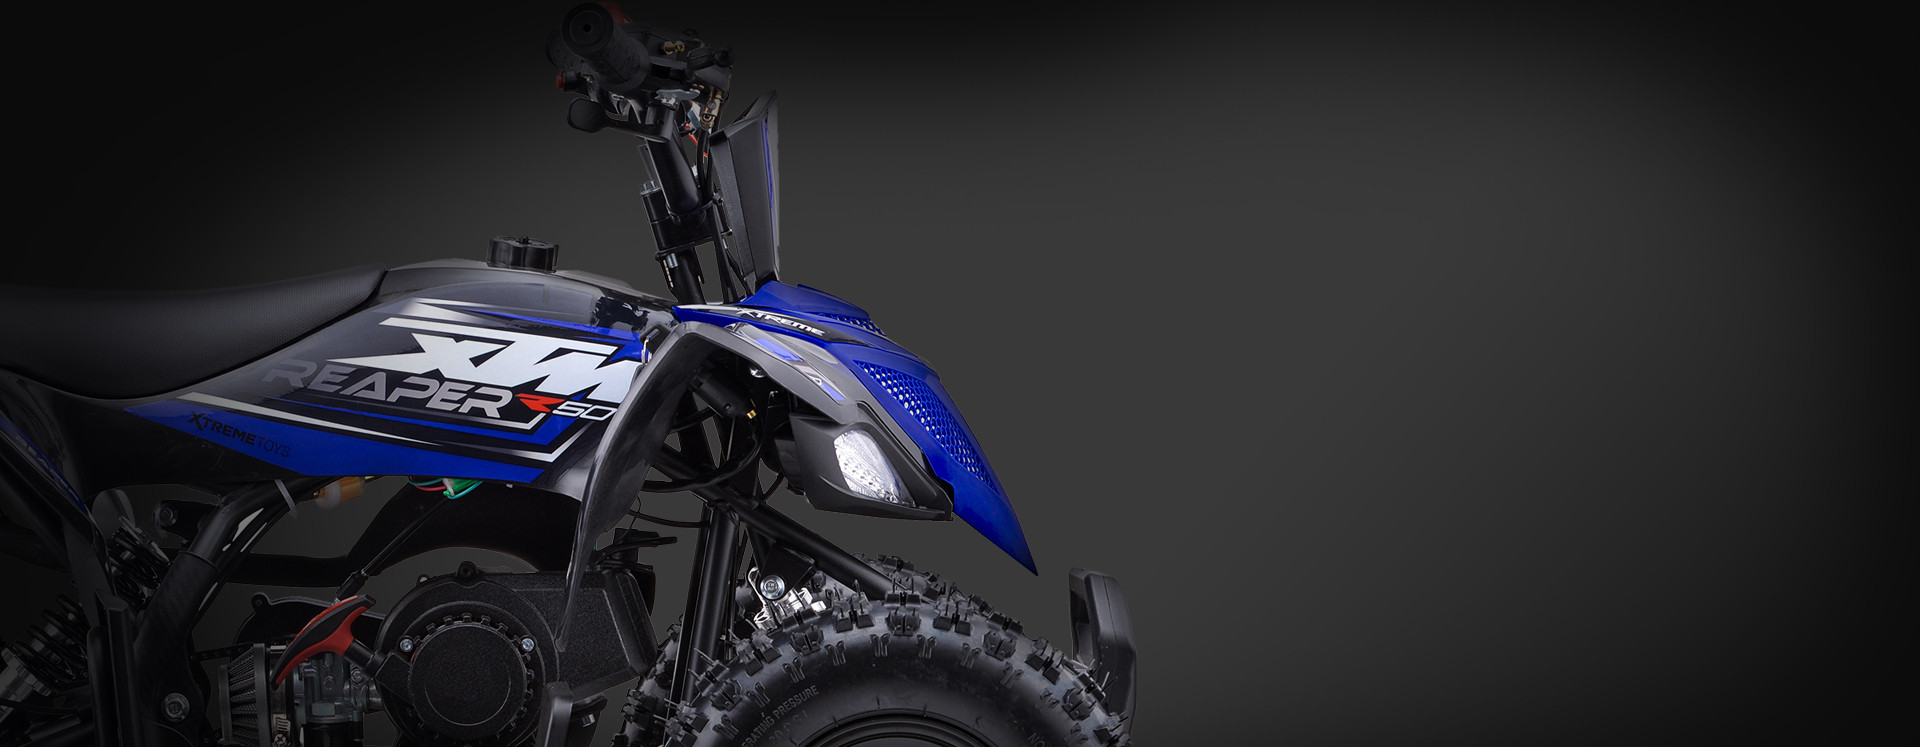 XTM REAPER R50 PETROL 50cc QUAD BIKE BLUE 